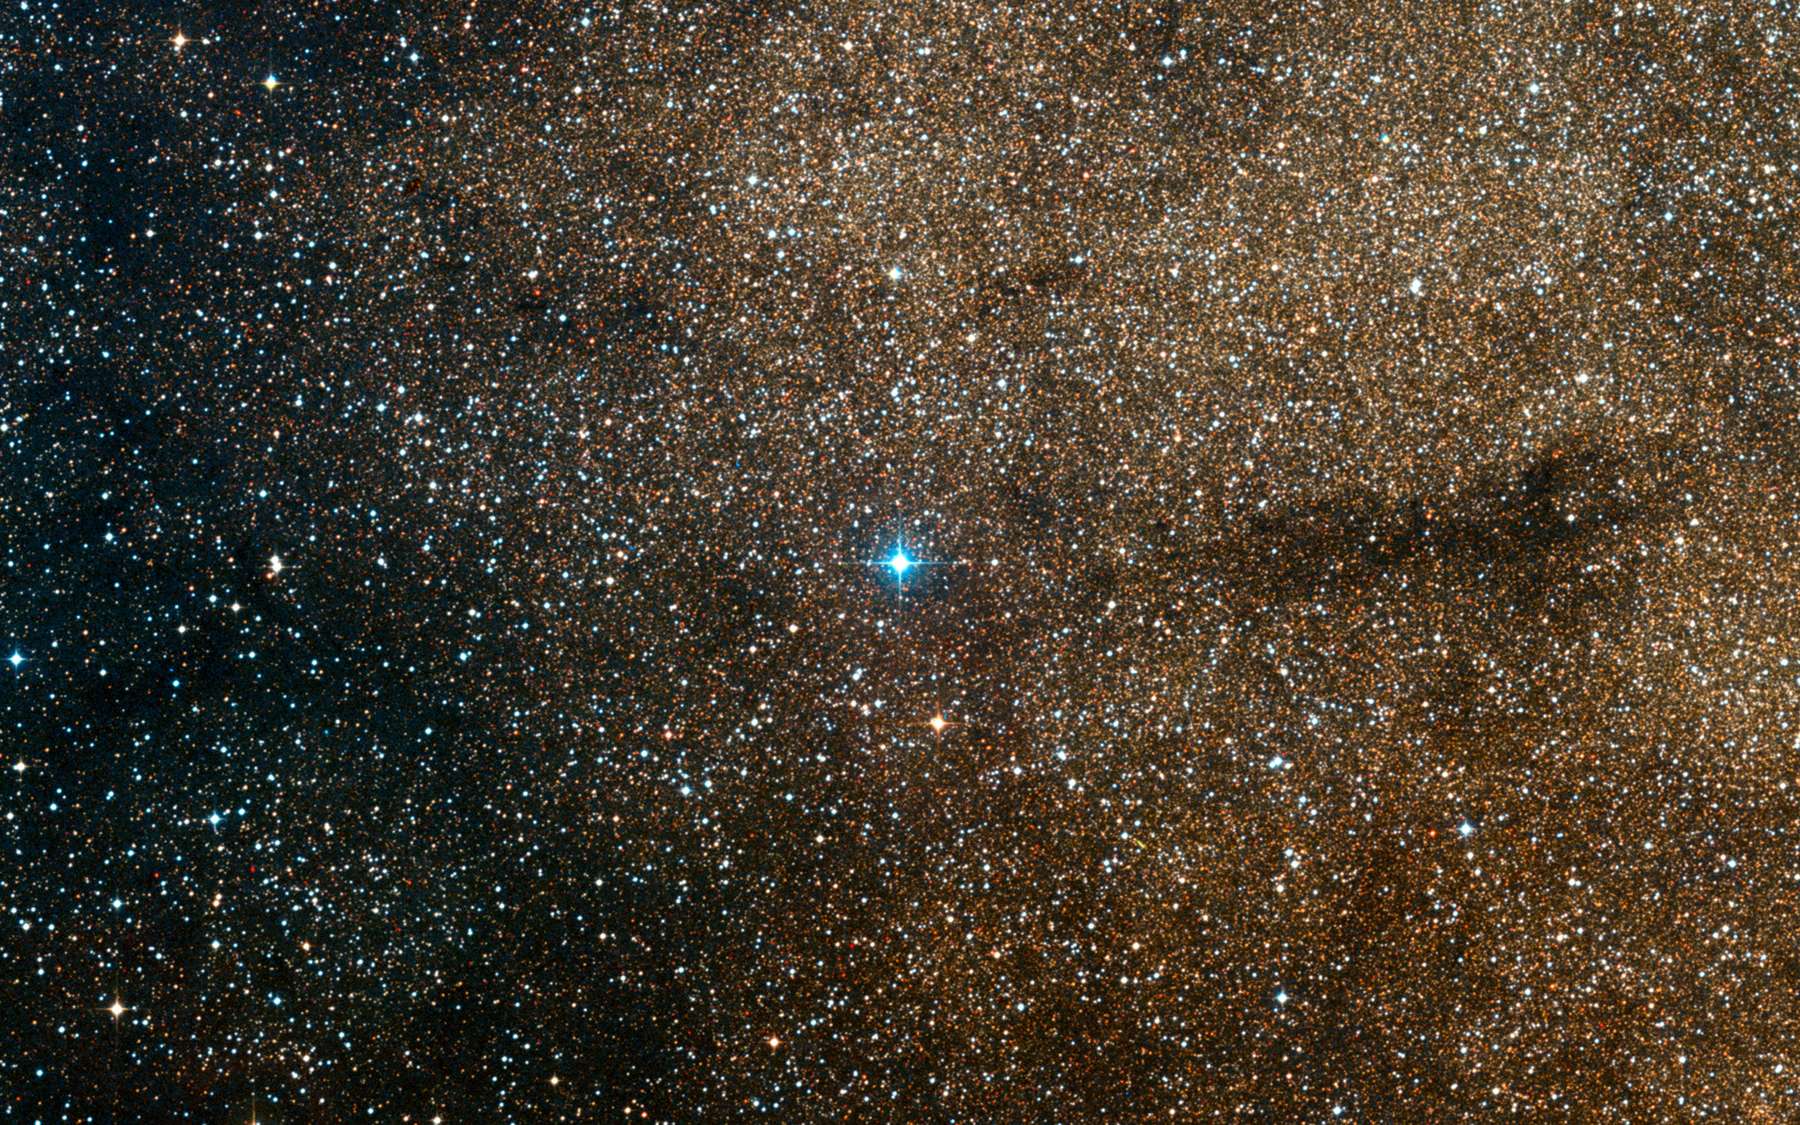 Une image du ciel extraite du Digitized Sky Survey, version numérique de plusieurs atlas astronomique. © ESO, Digitized Sky Survey 2, Davide De Martin